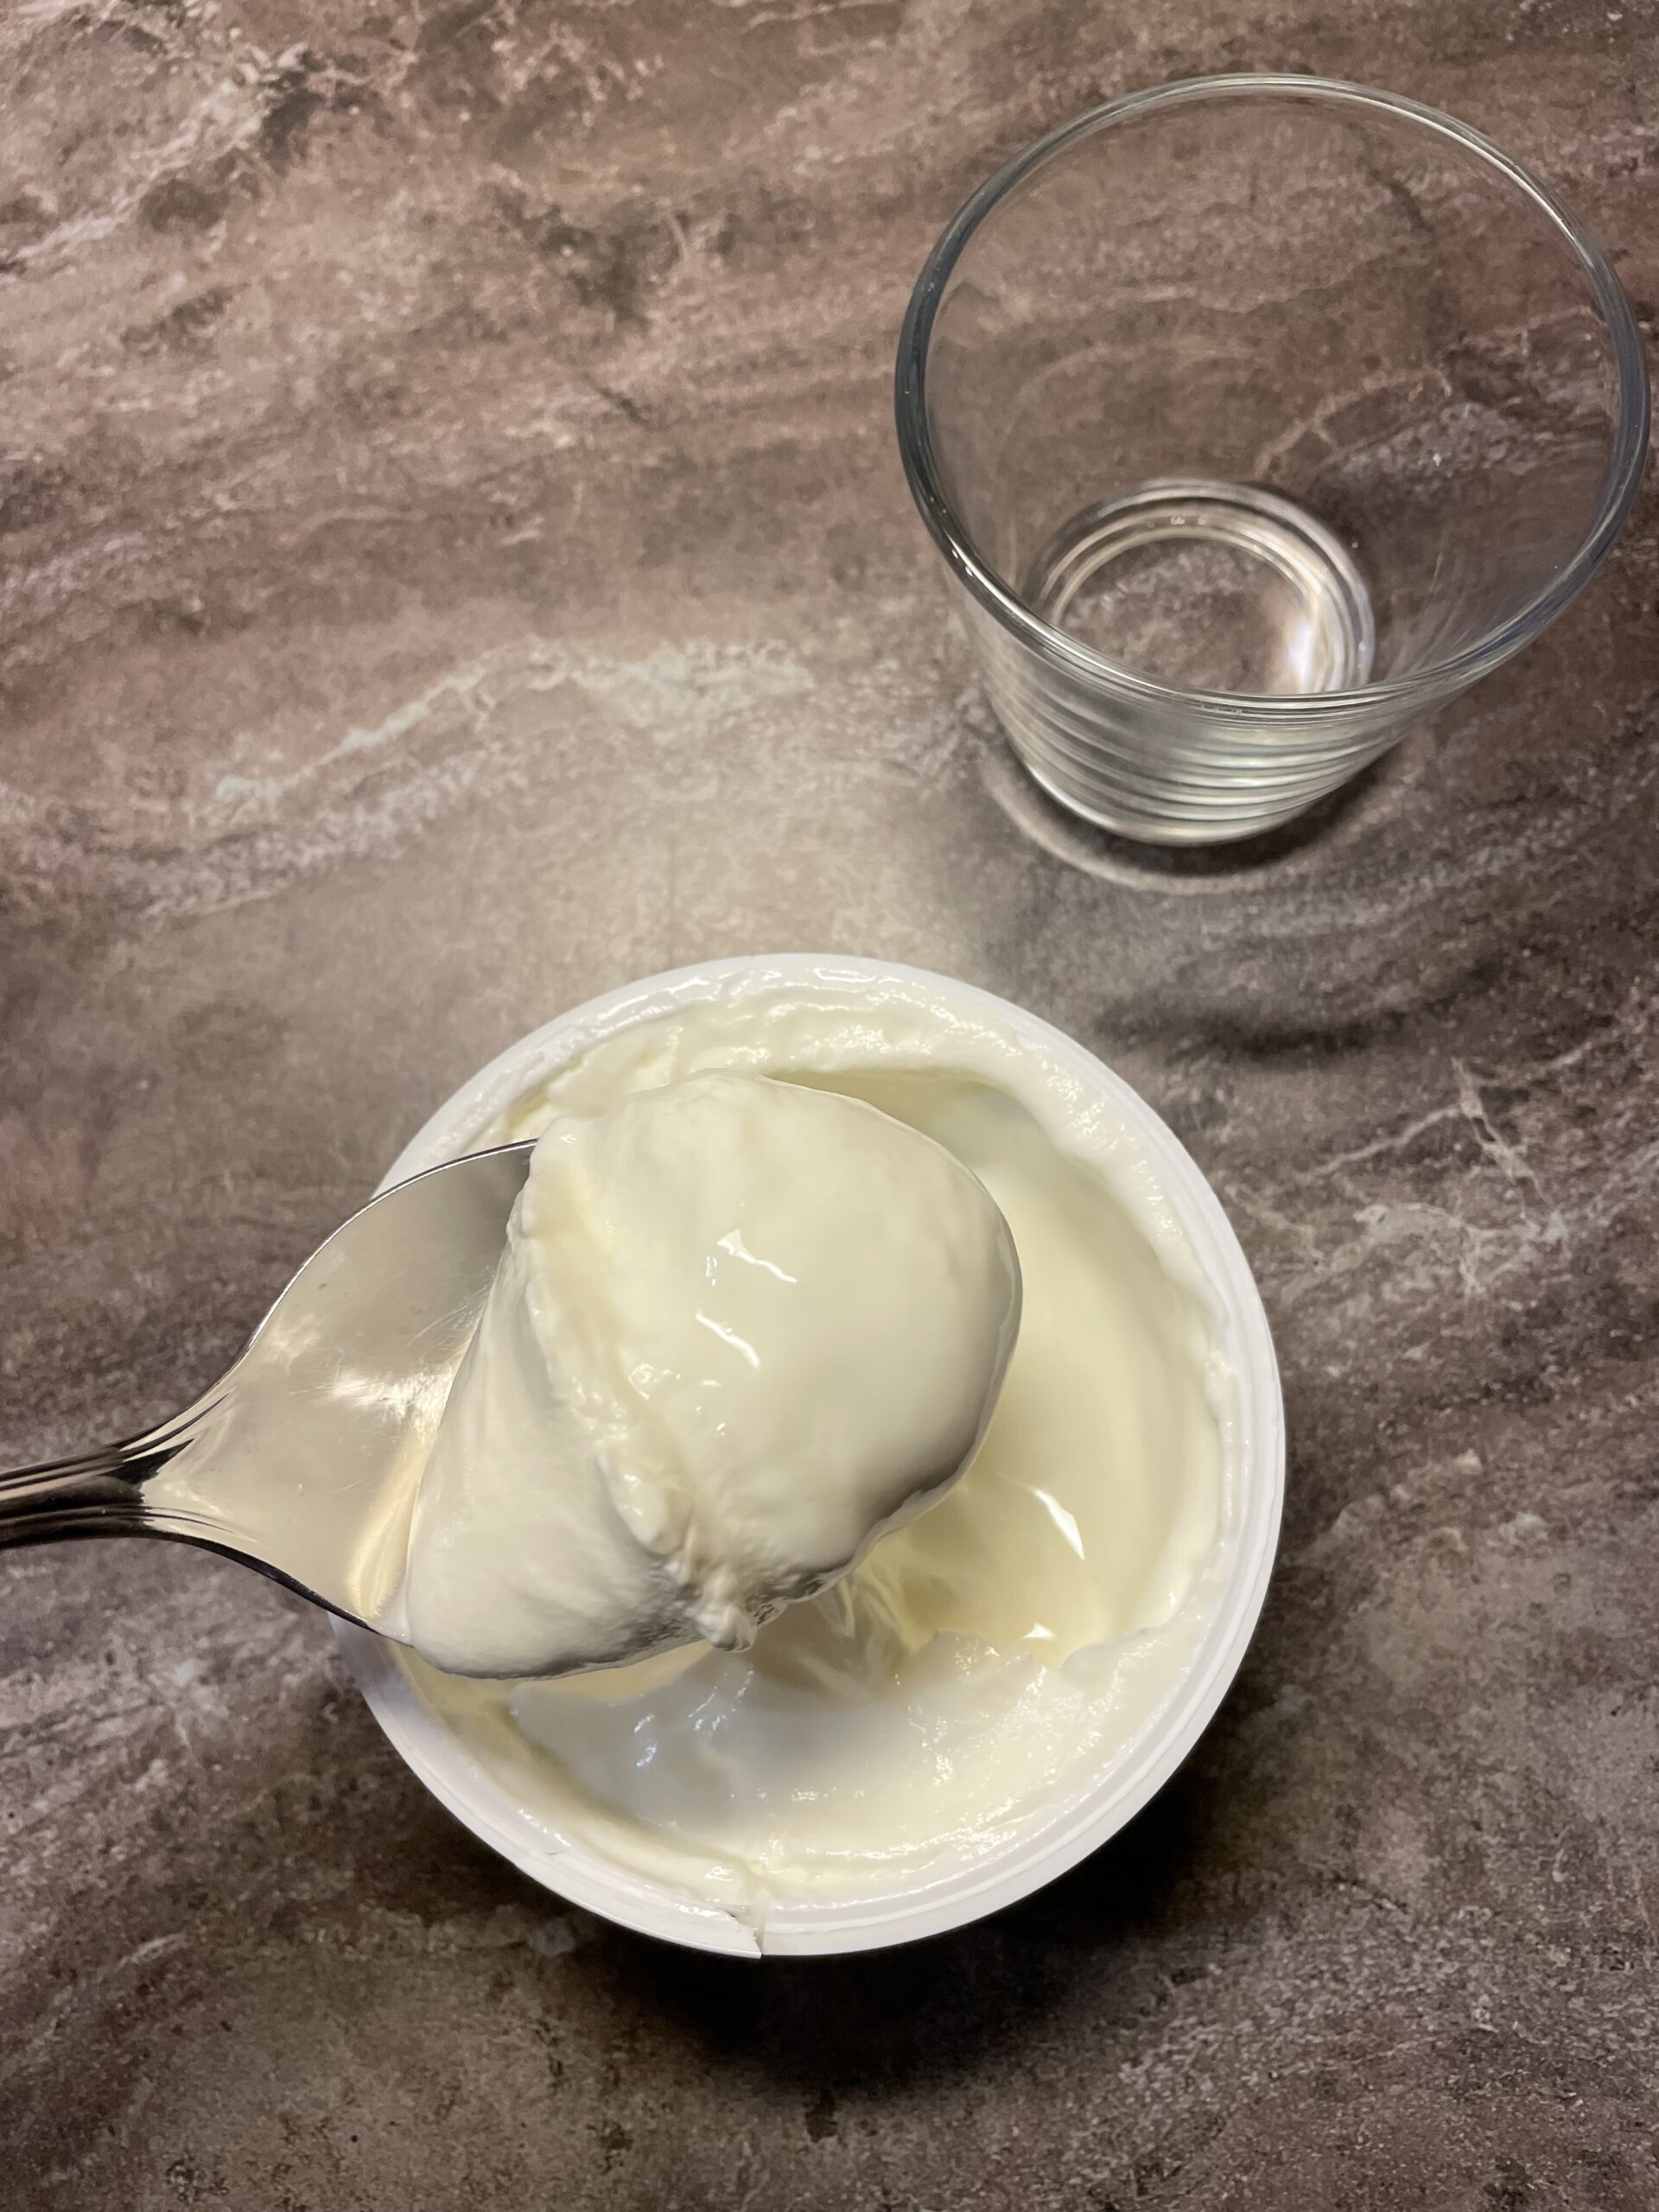 2. Bild zum Schritt 4 für das Bastel- und DIY-Abenteuer für Kinder: 'Jetzt füllt ihr zwei bis drei Esslöffel cremigen Naturjoghurt in...'